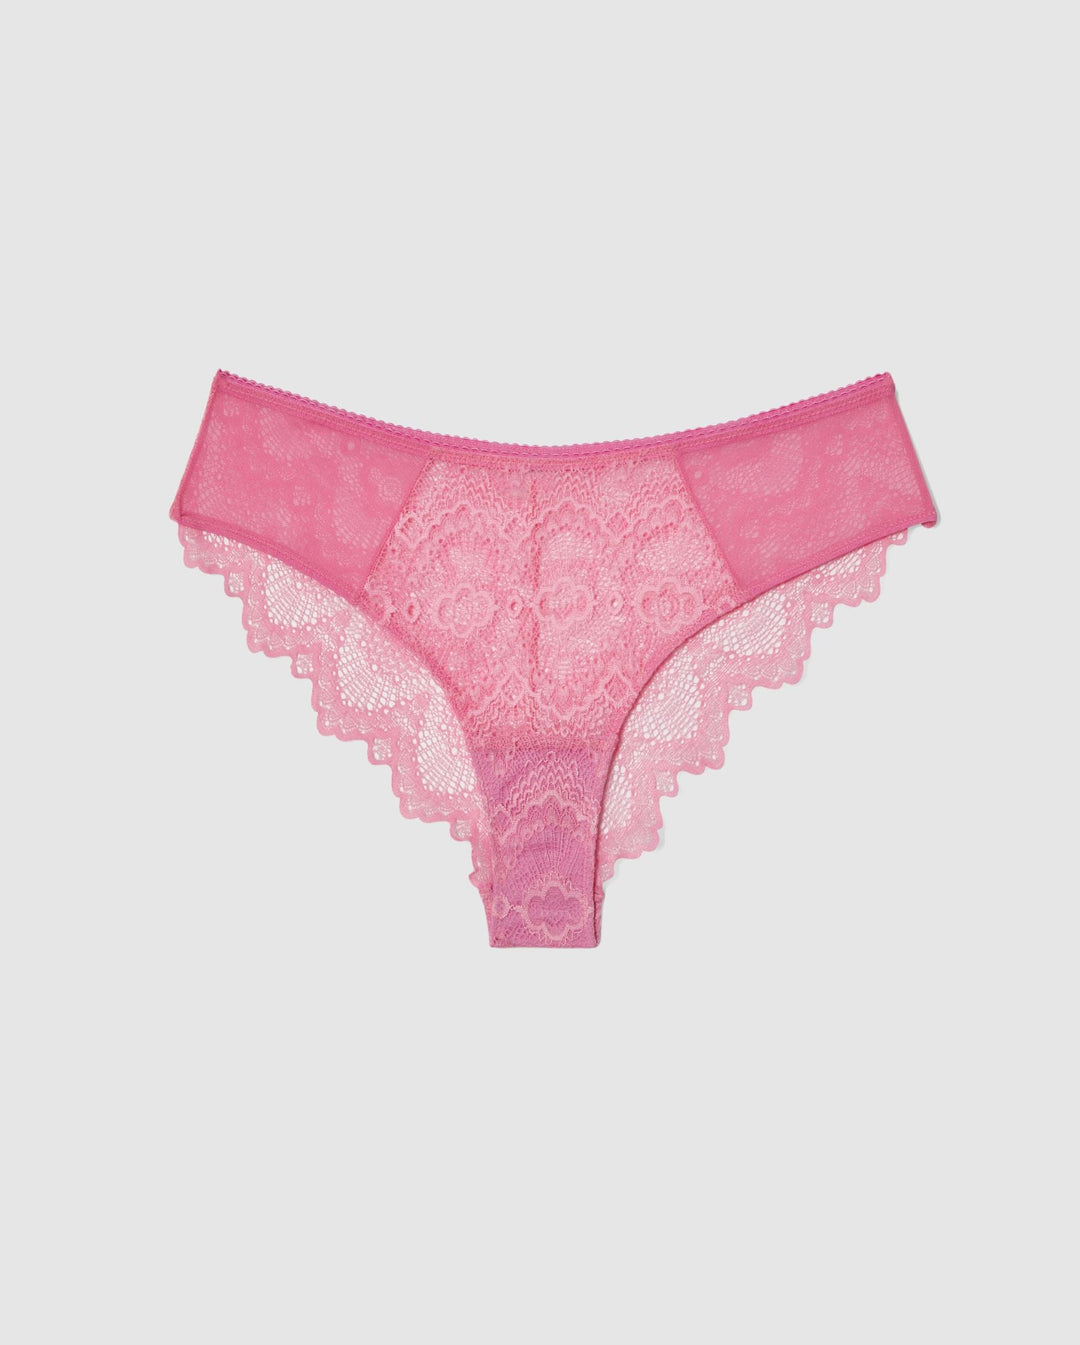 Lace Cheeky Candy Pink • Brief Panties • Understatement Underwear